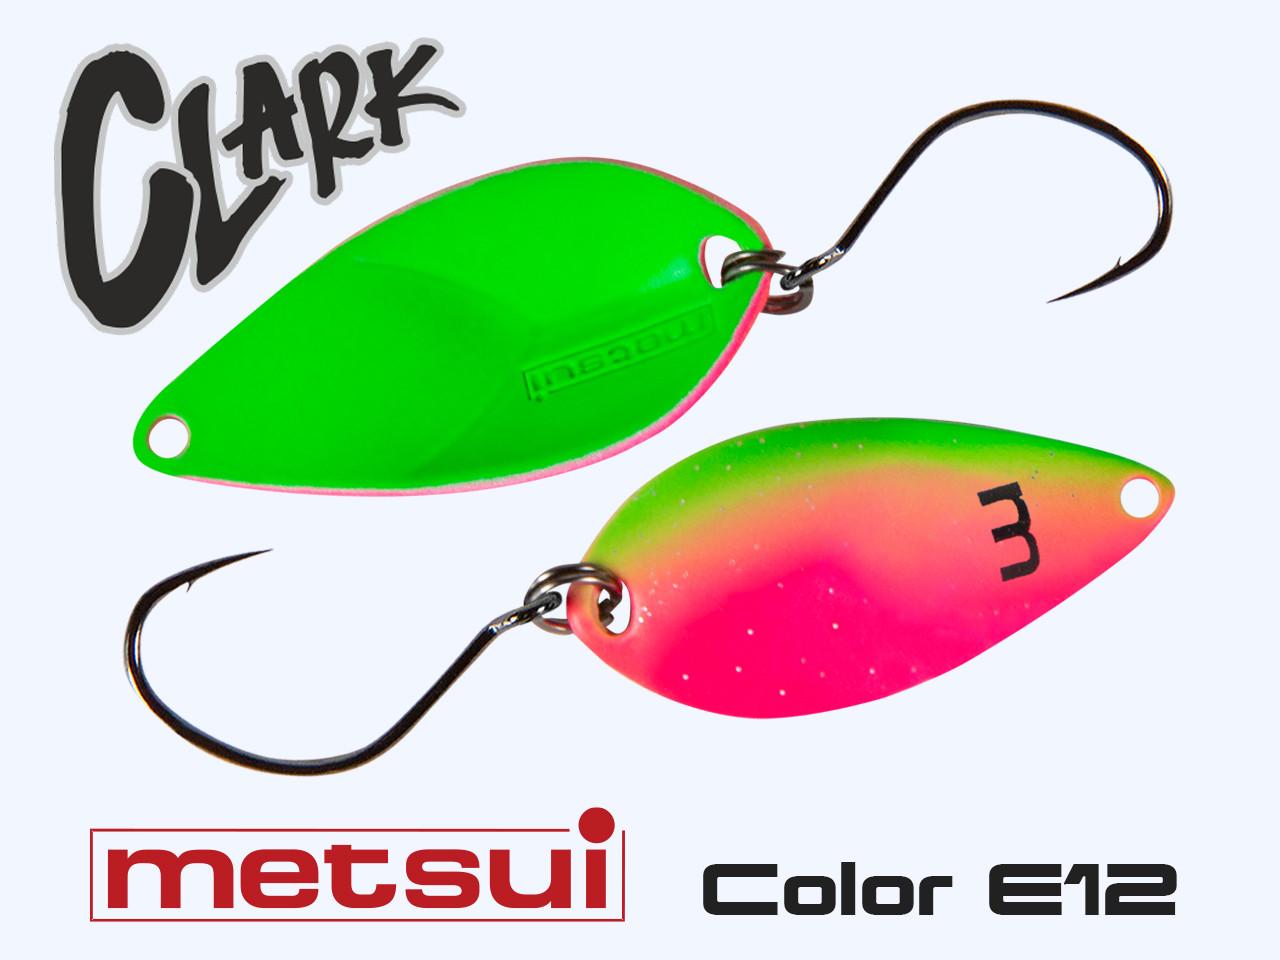 Колеблющаяся блесна METSUI CLARK 2.3 g, цвет E12